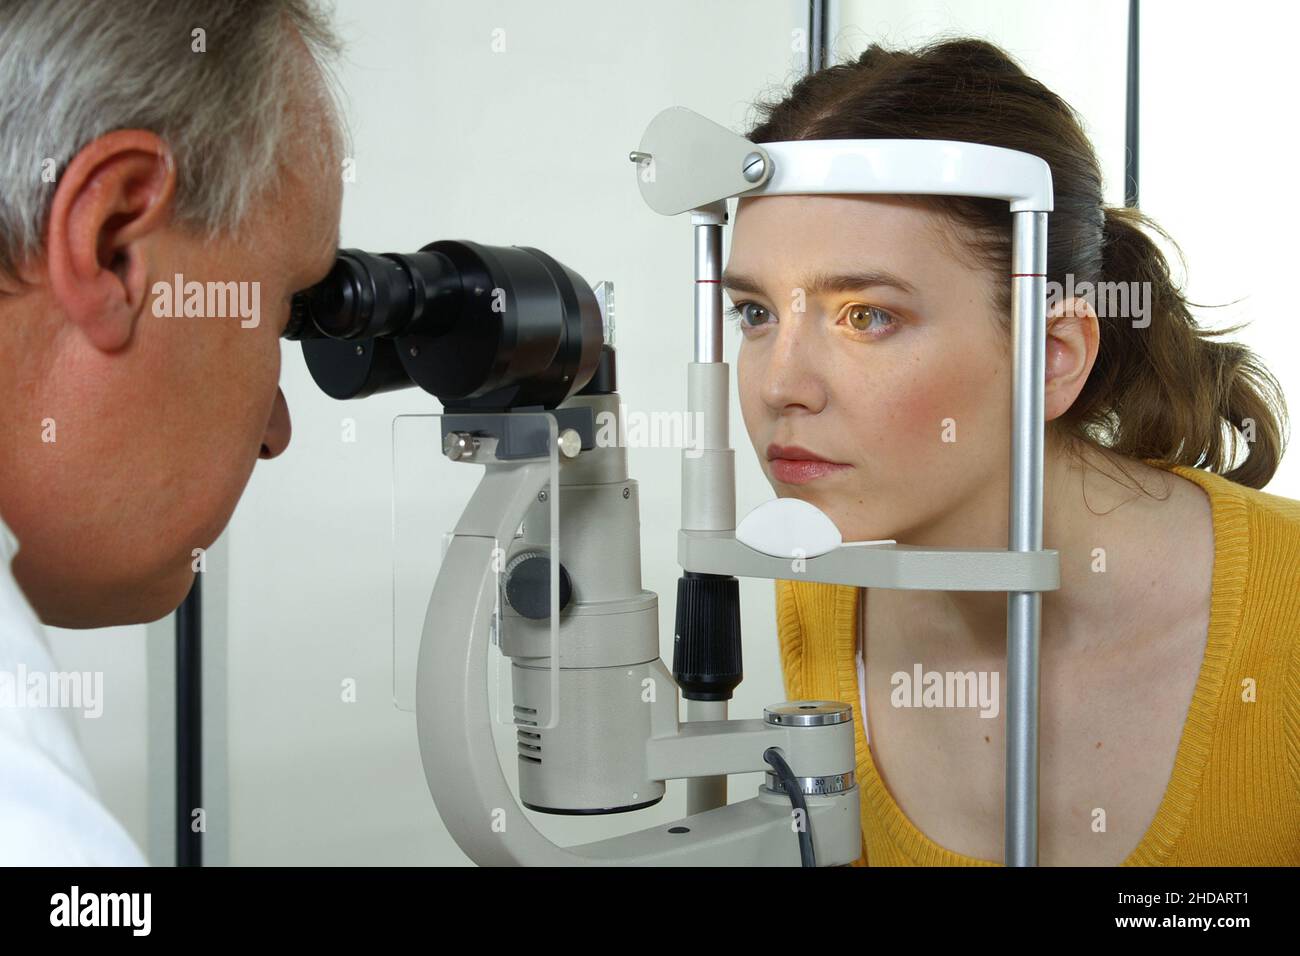 Ein Augenarzt untersucht die Augen seiner Patientin Foto de stock